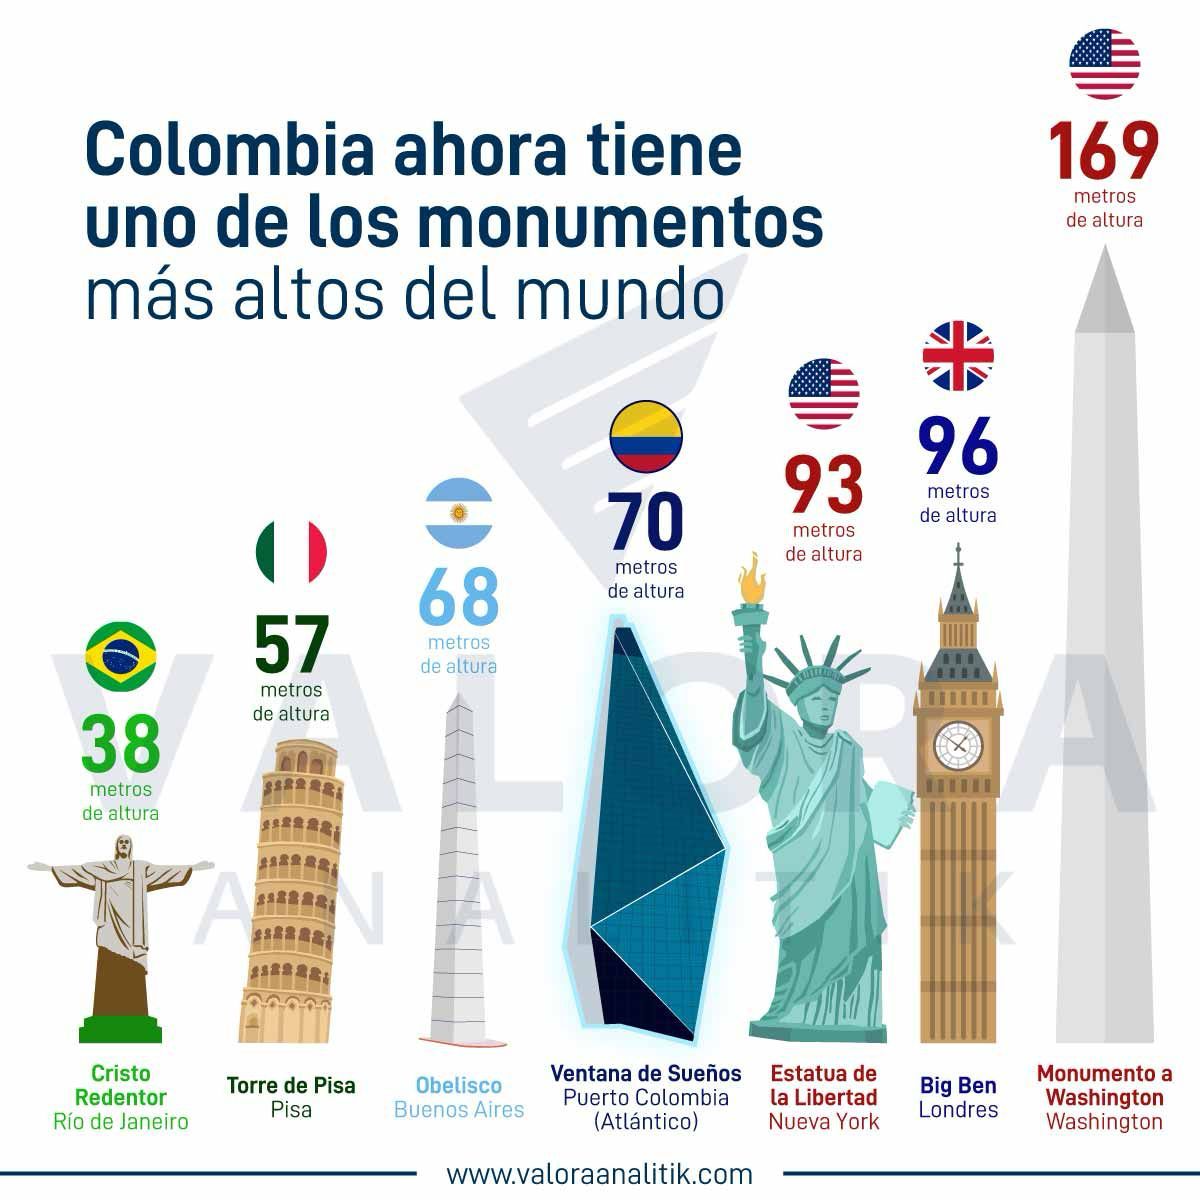 El ranking de los monumentos más altos del mundo en los que aparece Ventana de Sueños